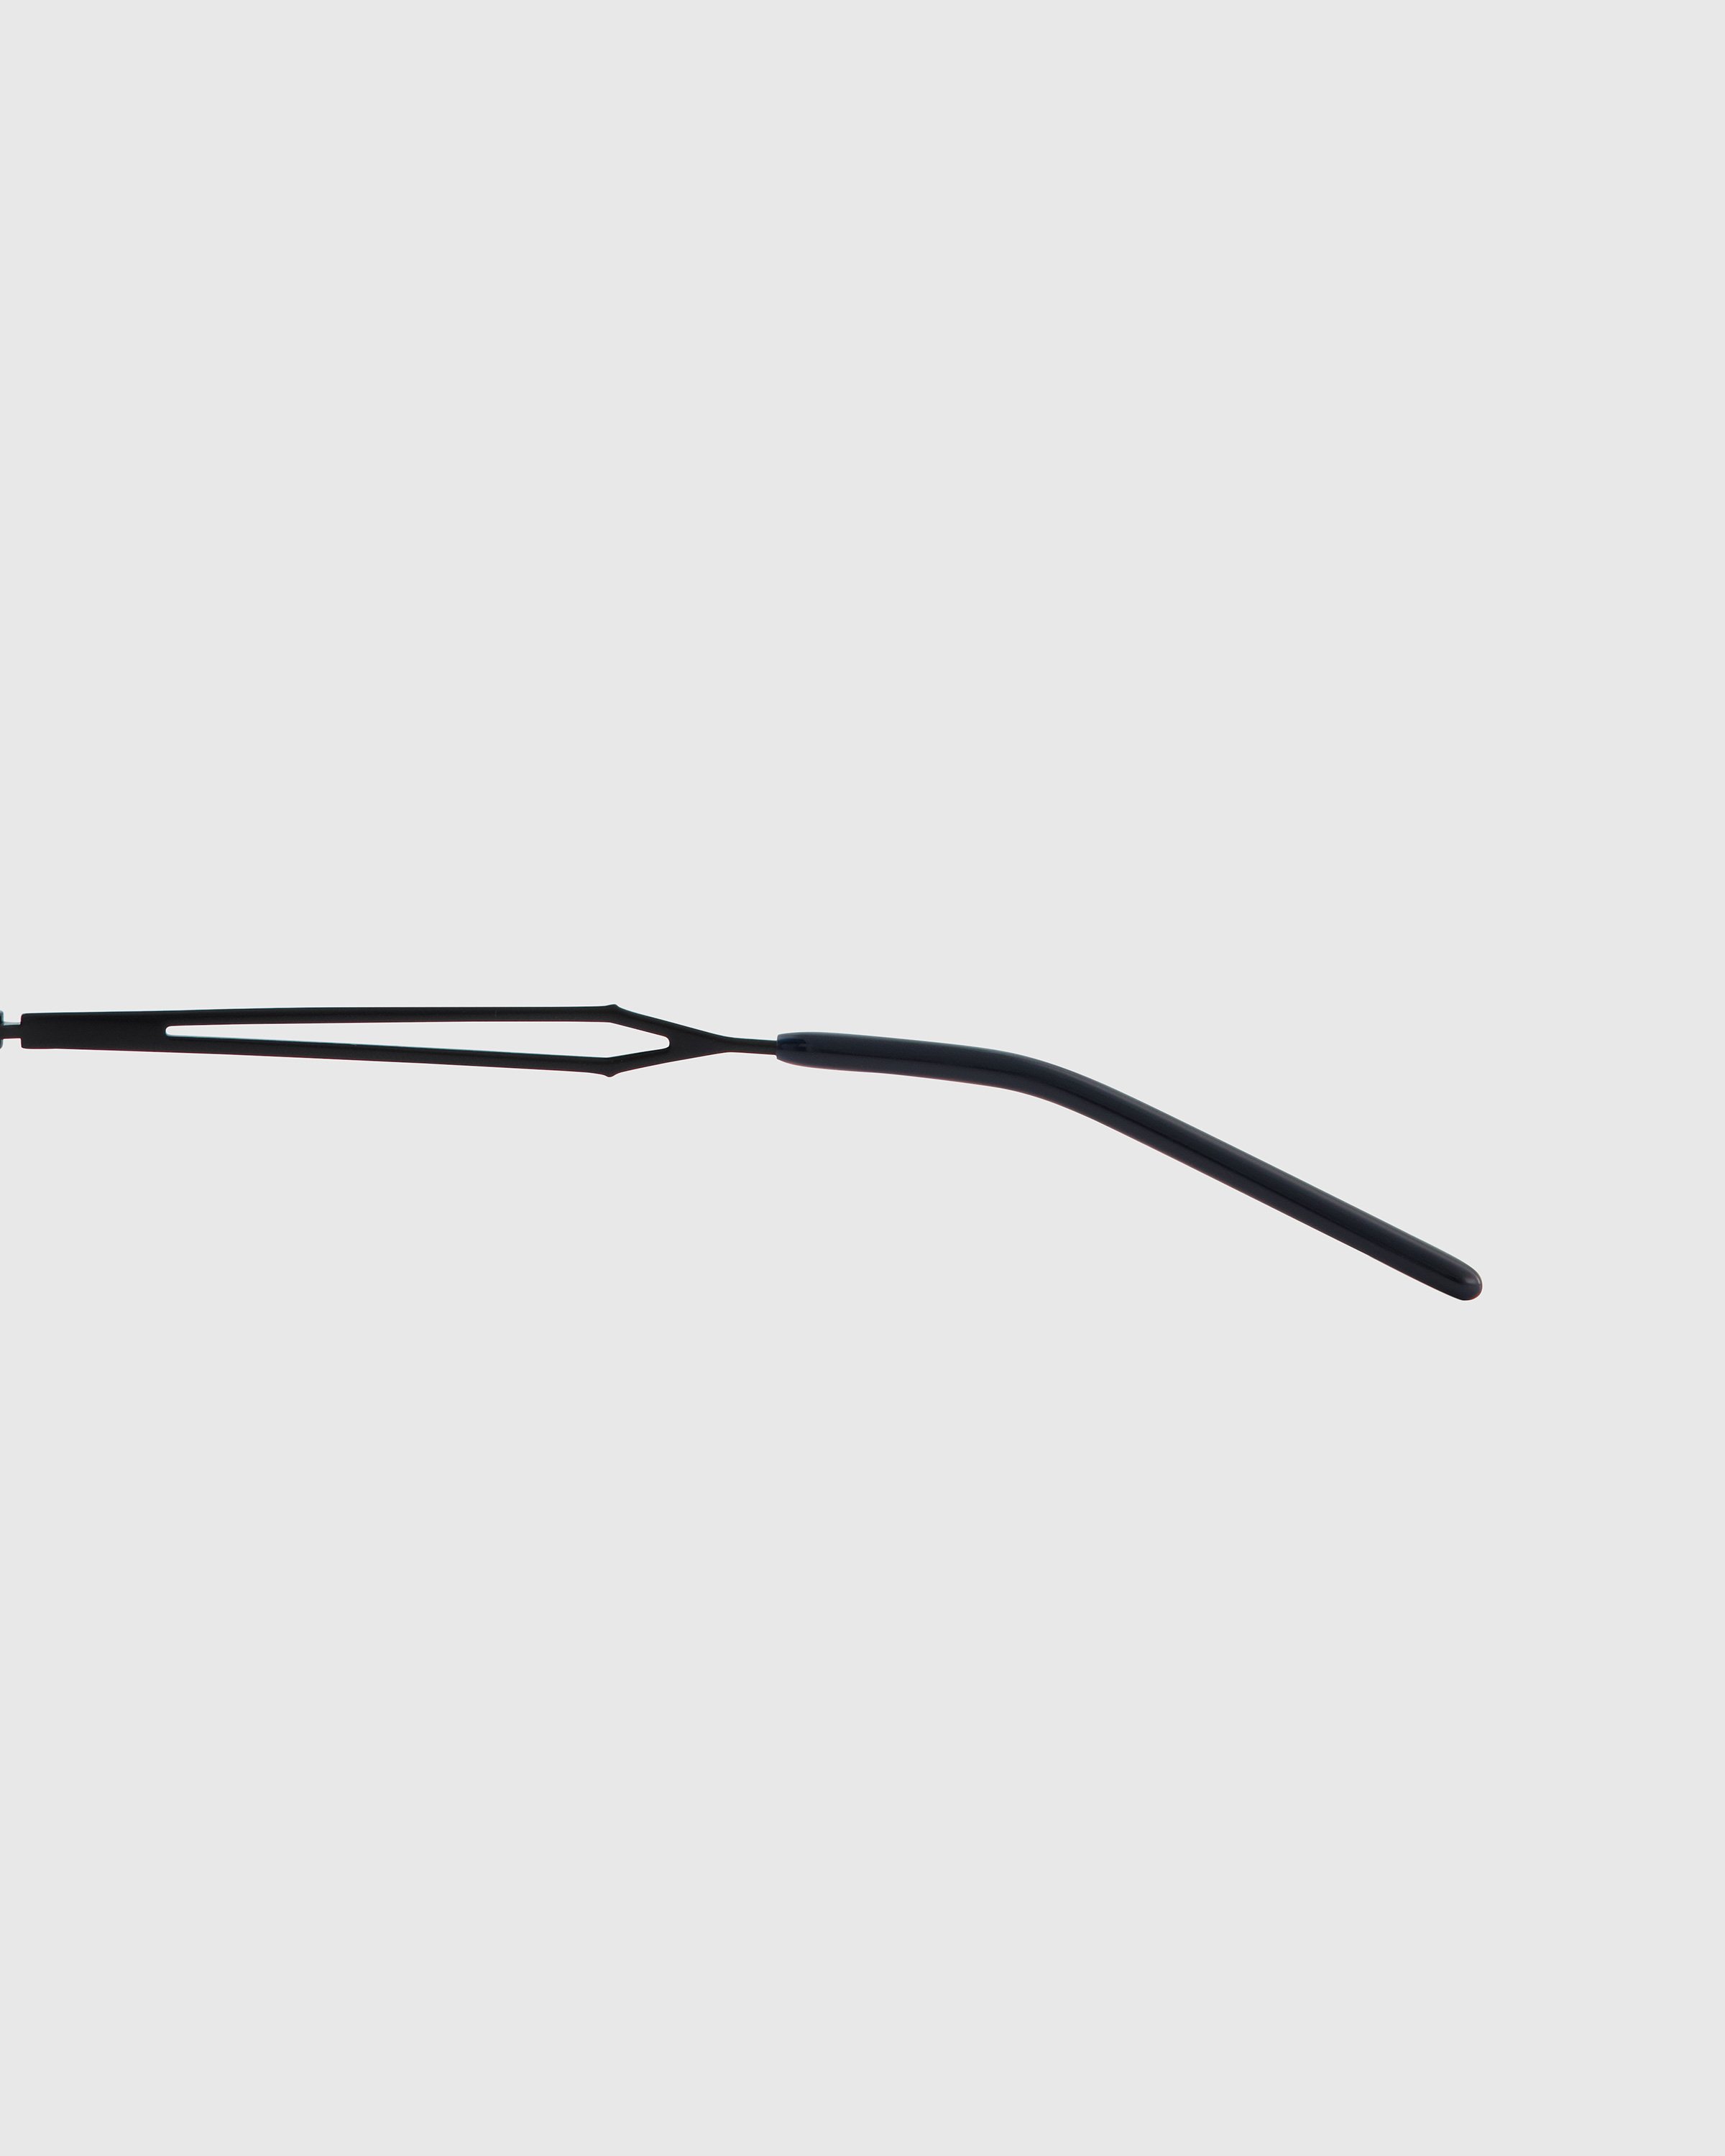 Jean Paul Gaultier x Burna Boy - 55-3175 Arceau Sunglasses Black - Accessories - Black - Image 3